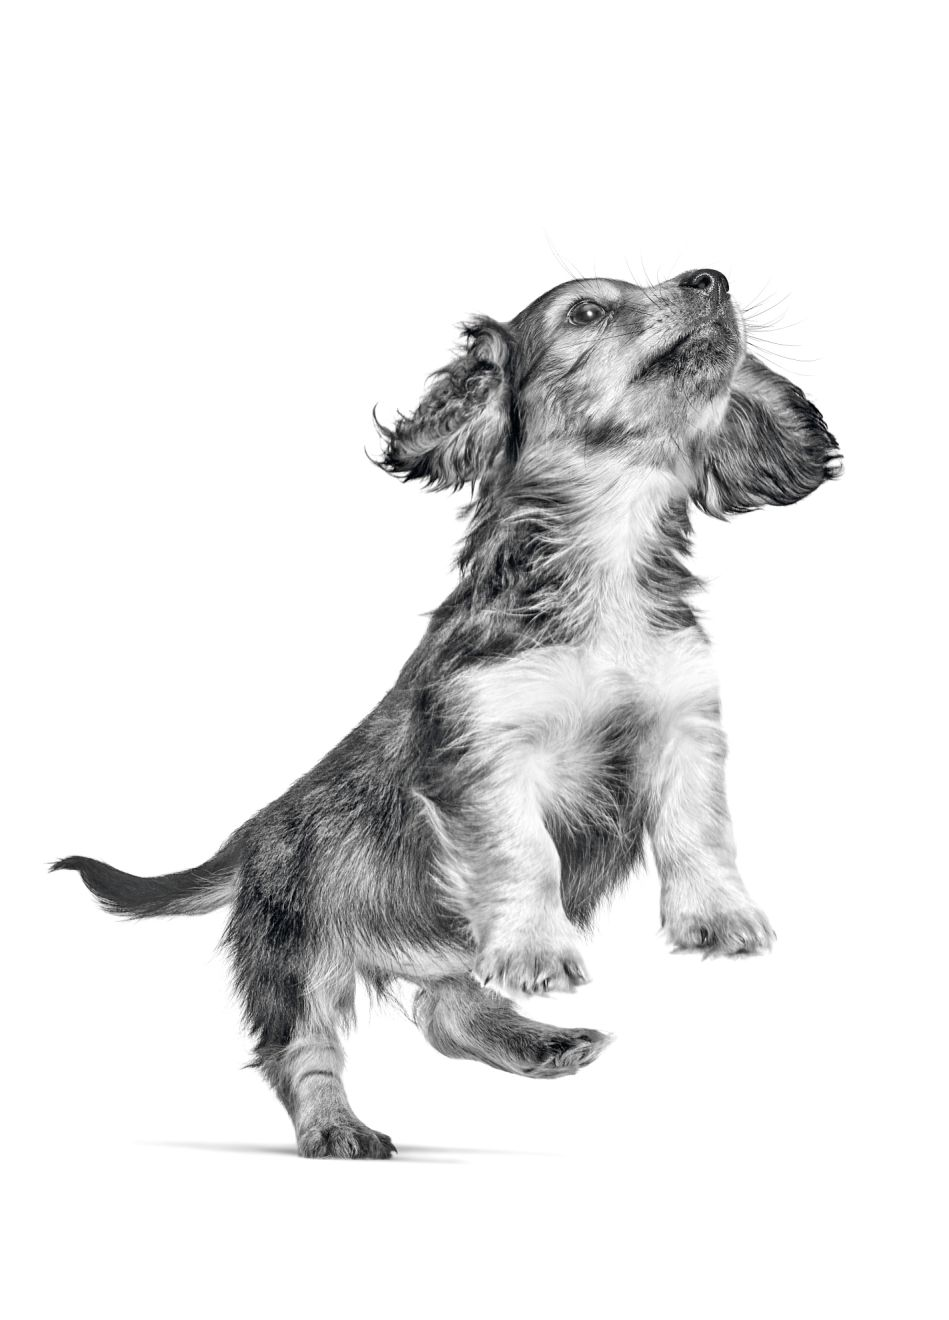 Cachorro de Teckel saltando en blanco y negro sobre un fondo blanco